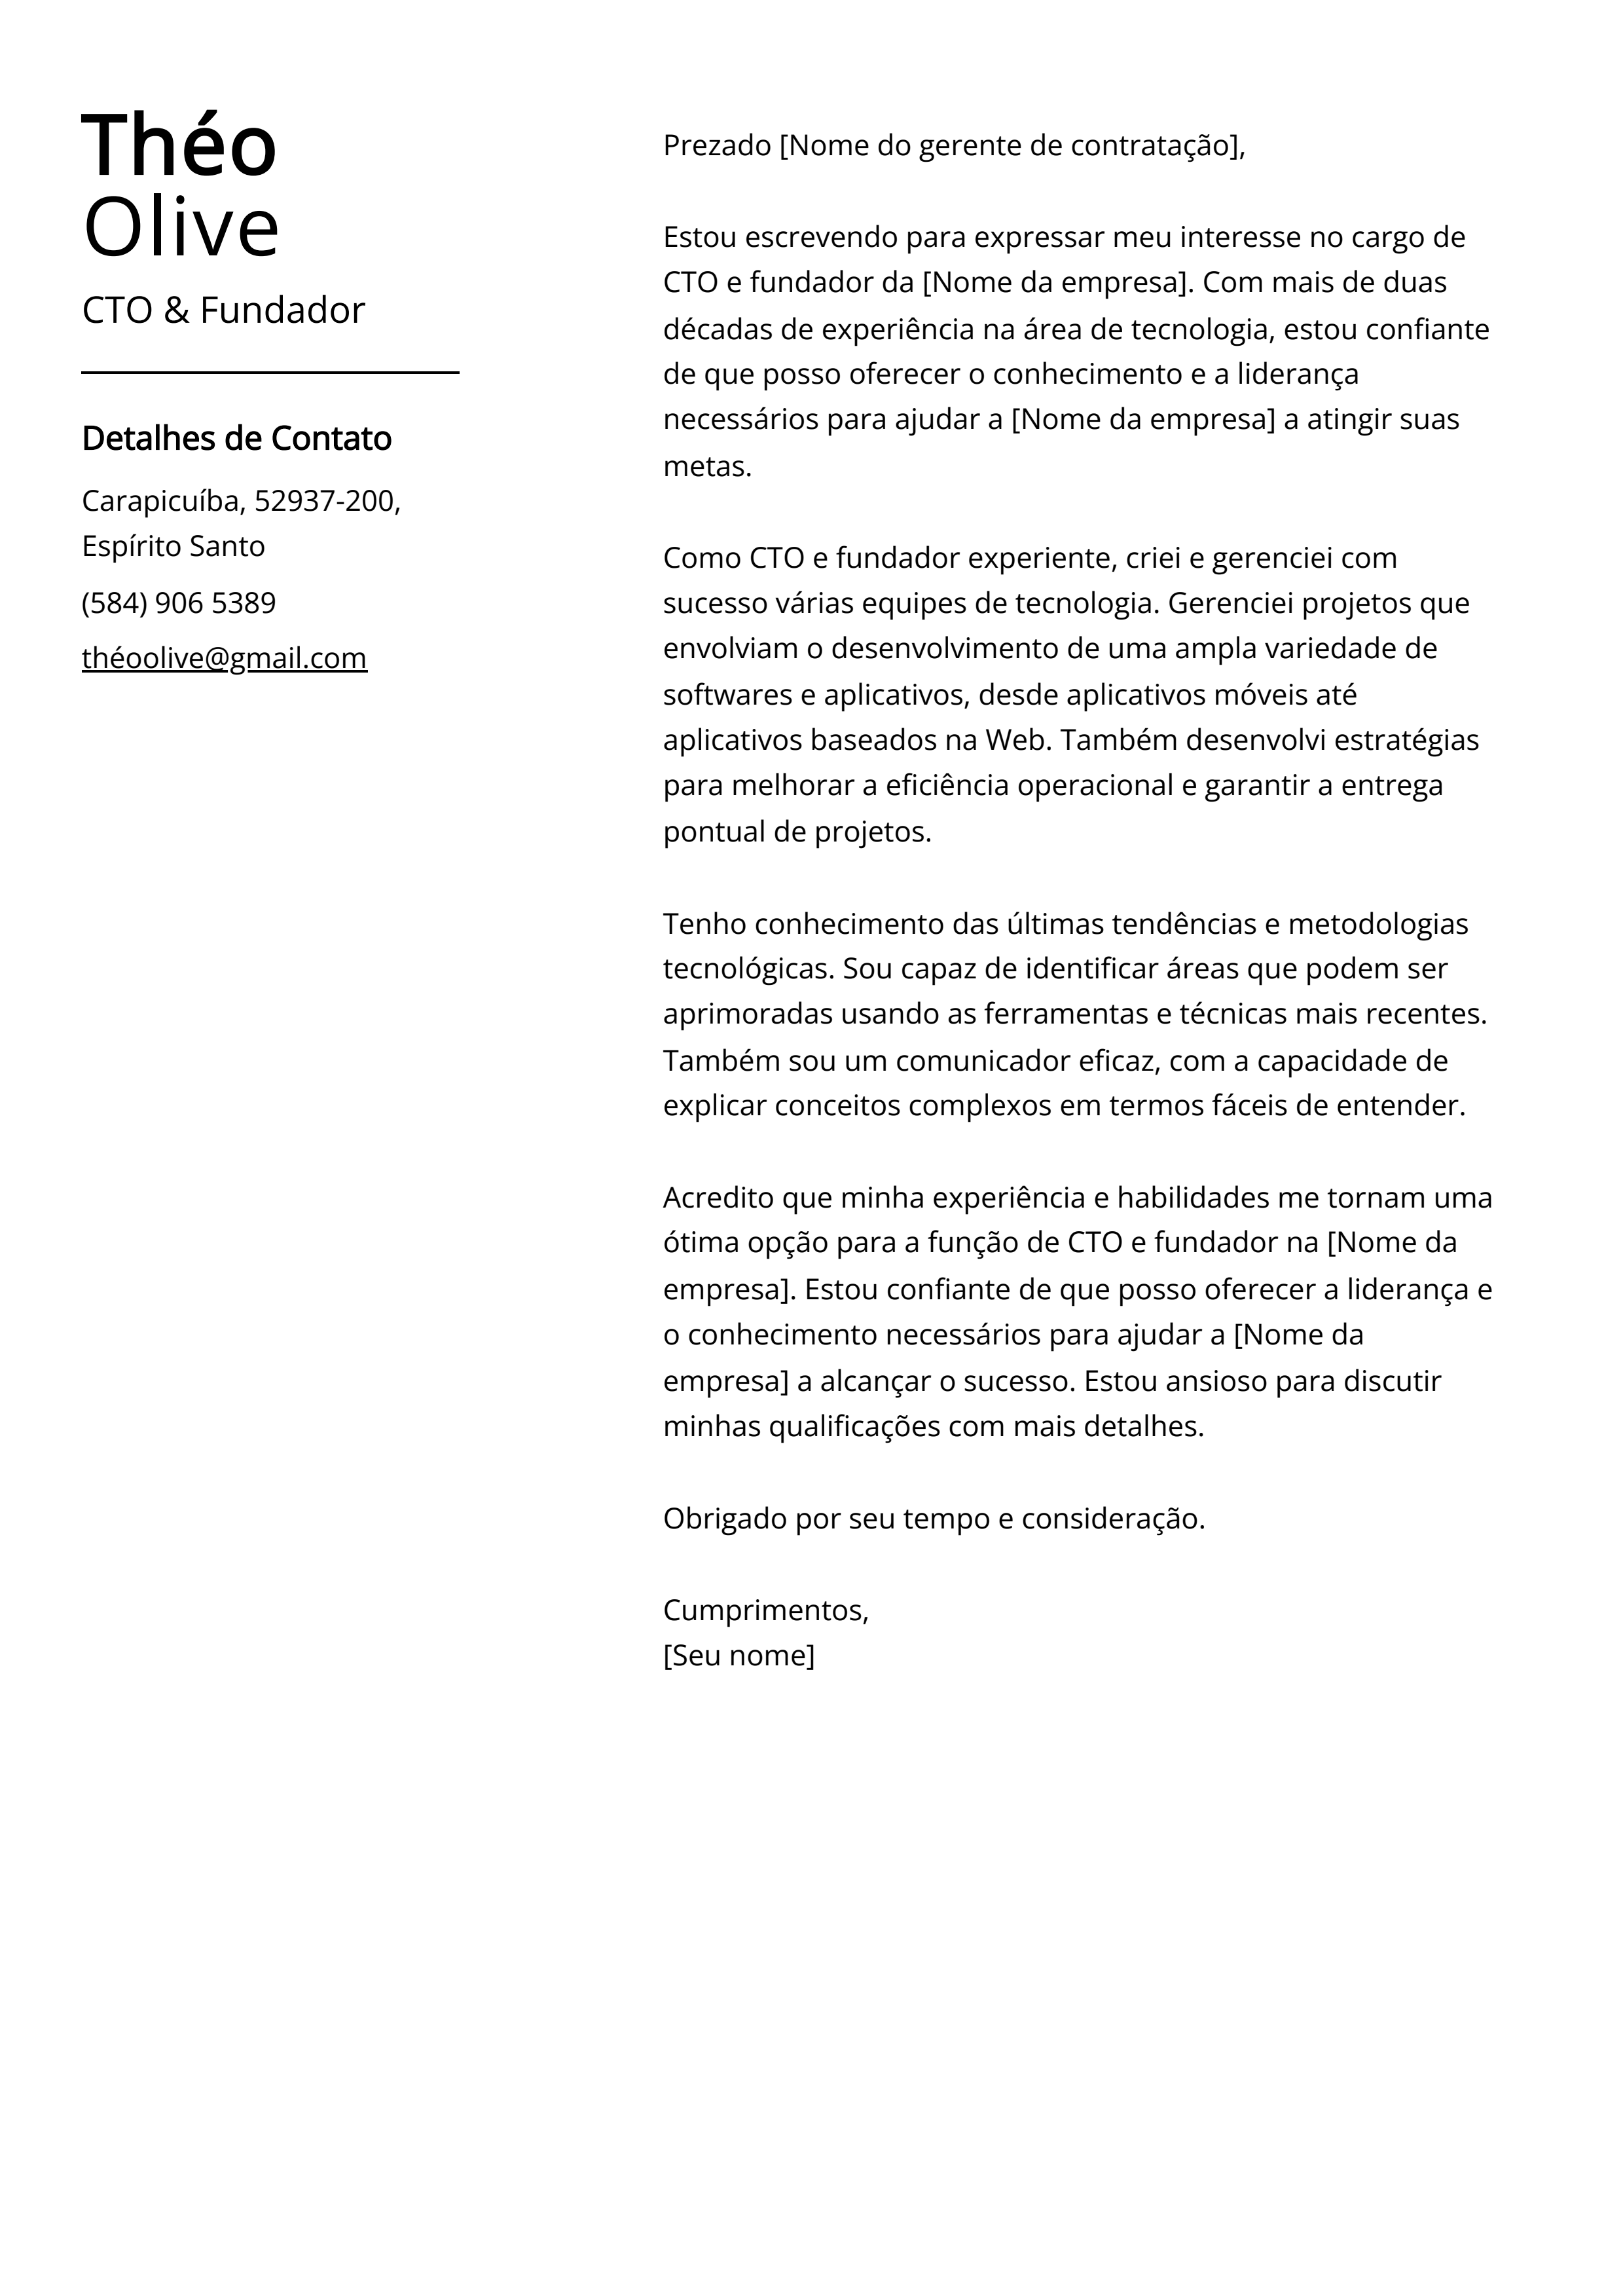 Exemplo de carta de apresentação de CTO e Fundador